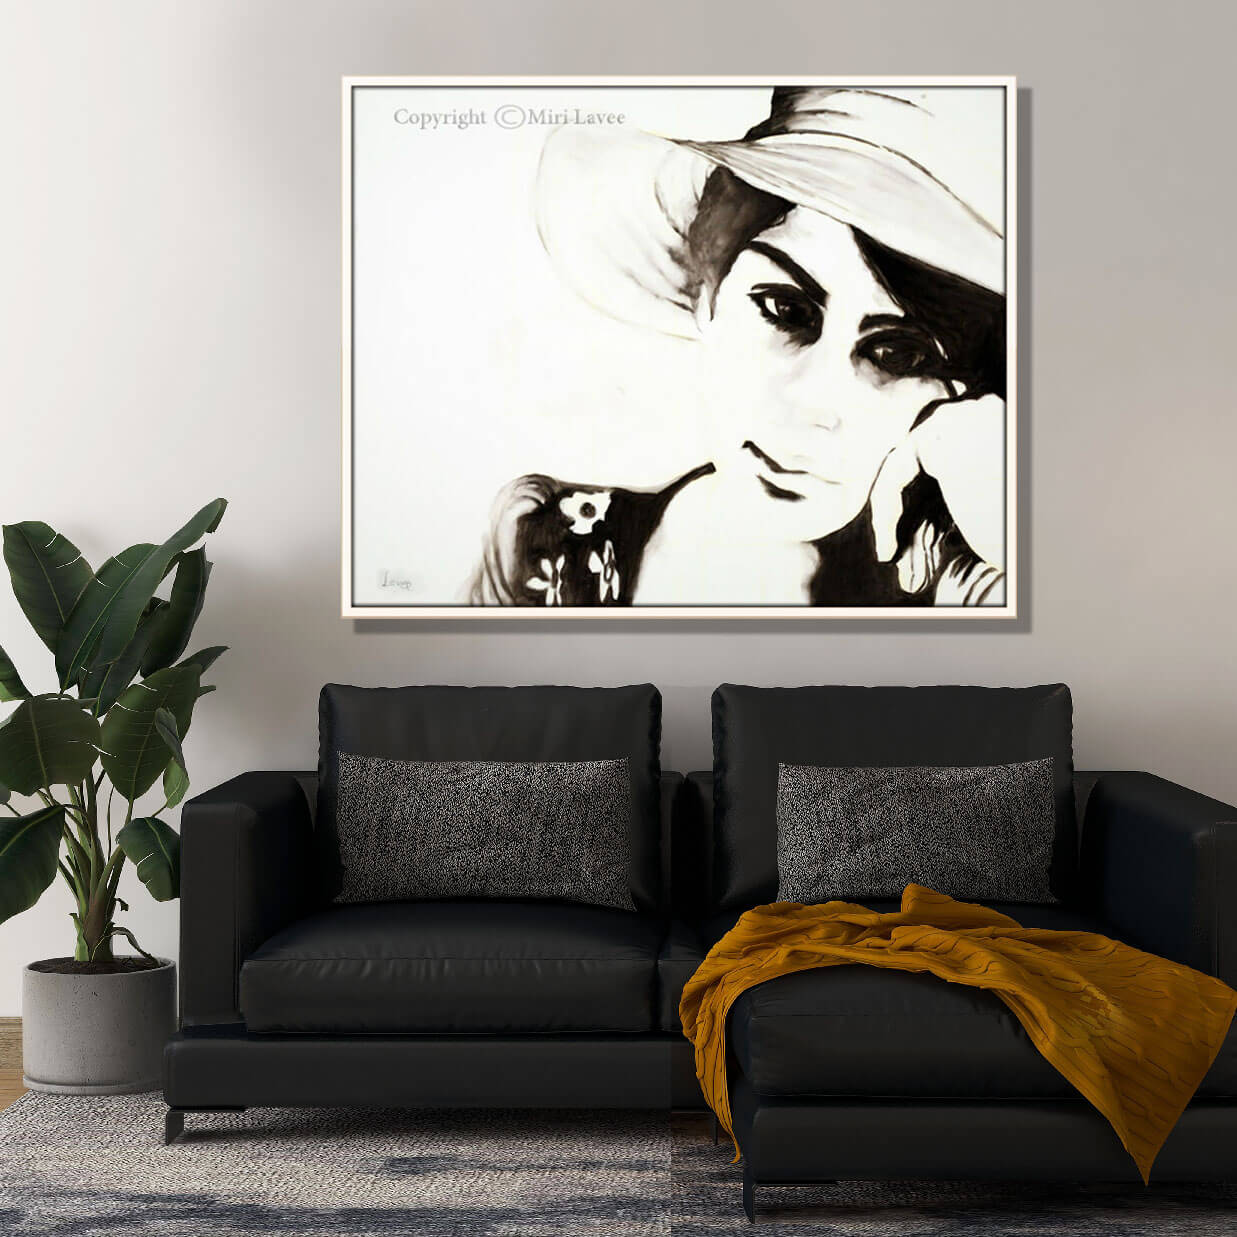 ציור של נערה בשחור לבן מעל ספה שחורה בסלון מעוצב ציירת מירי לביא